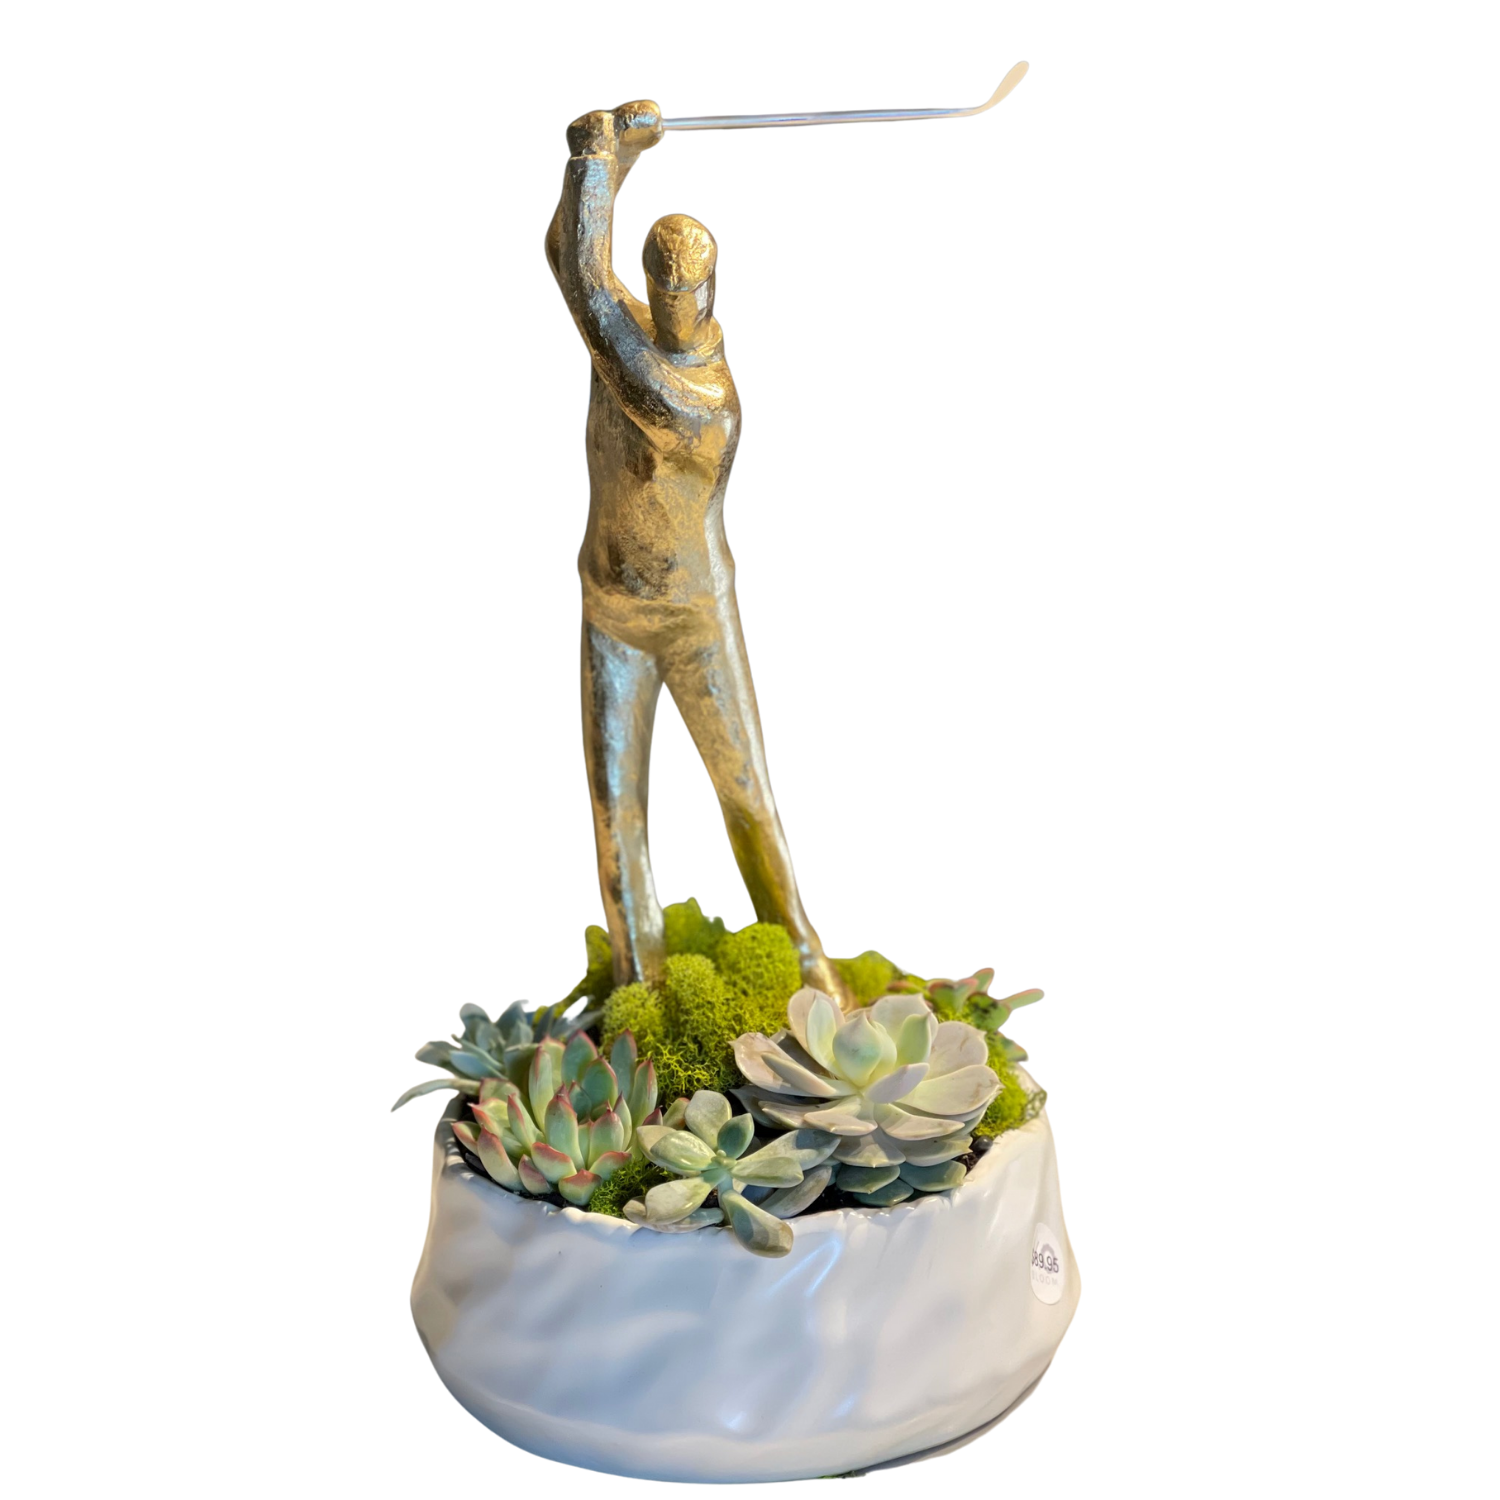 A golfer statue in a white ceramic vase